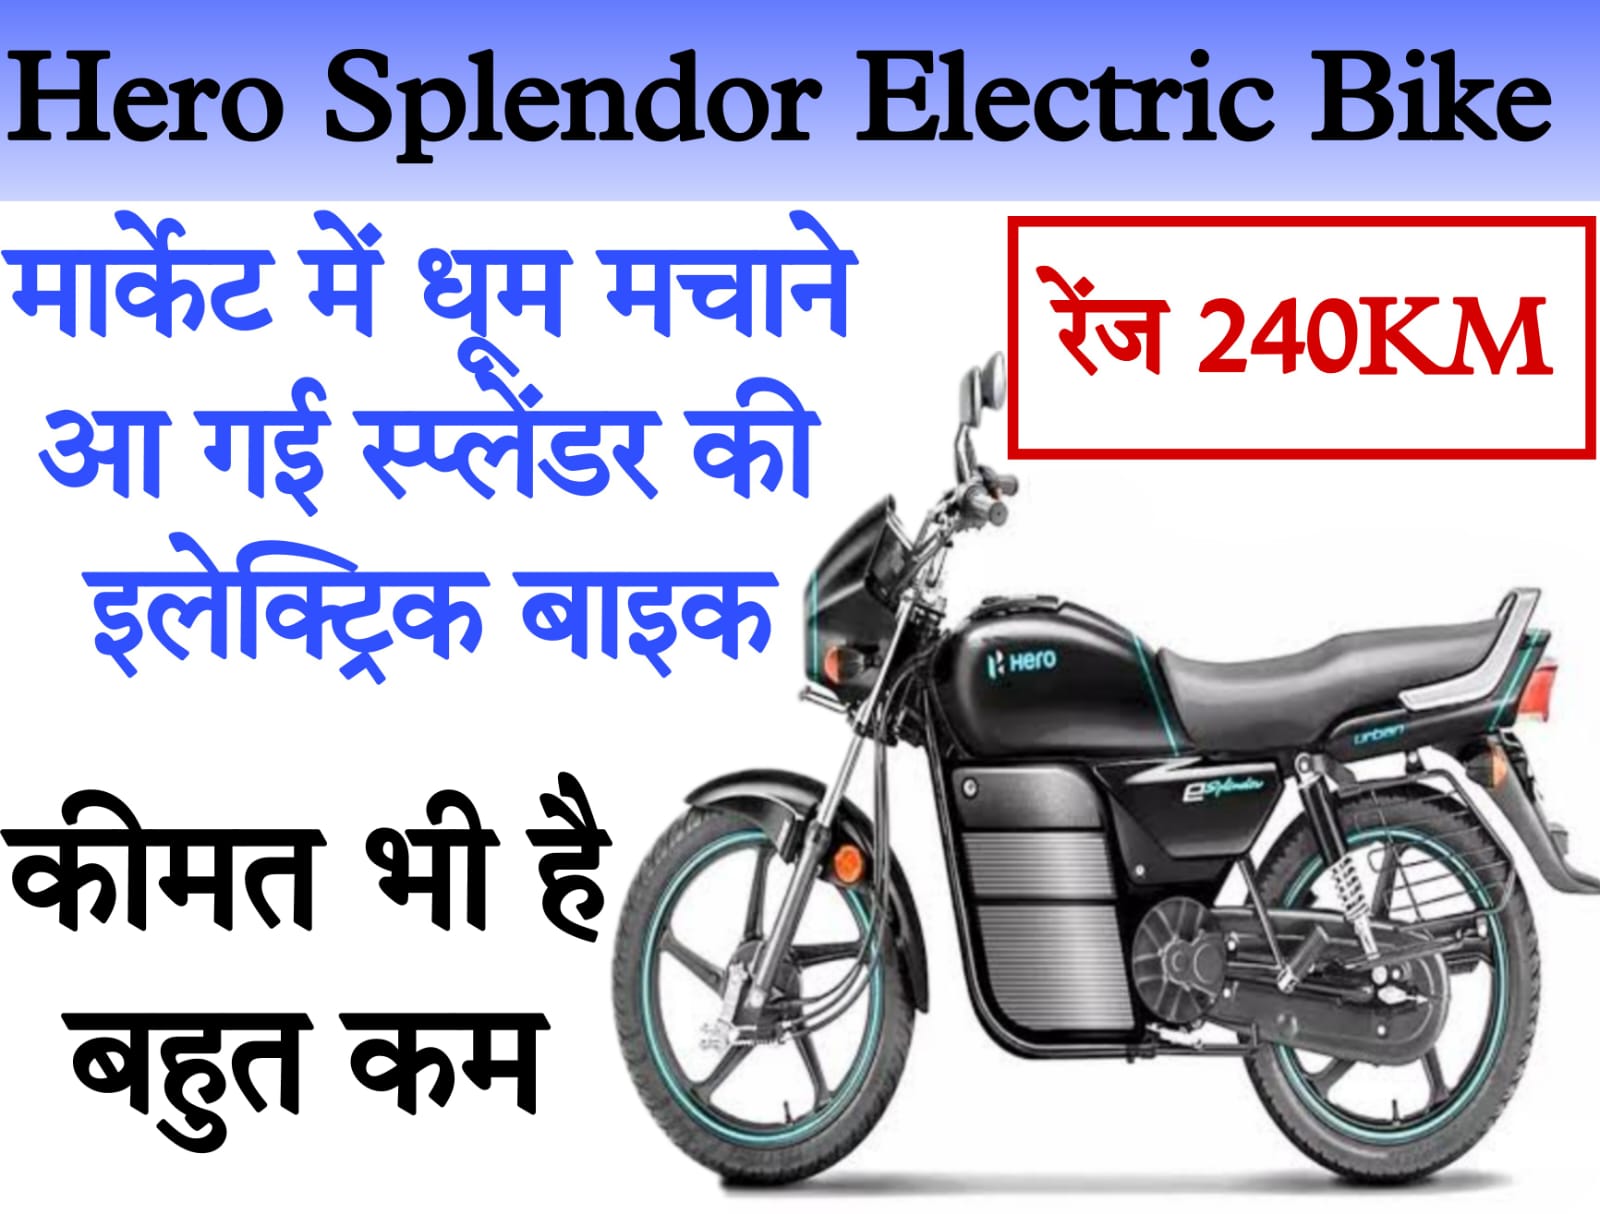 hero splendor electric bike price